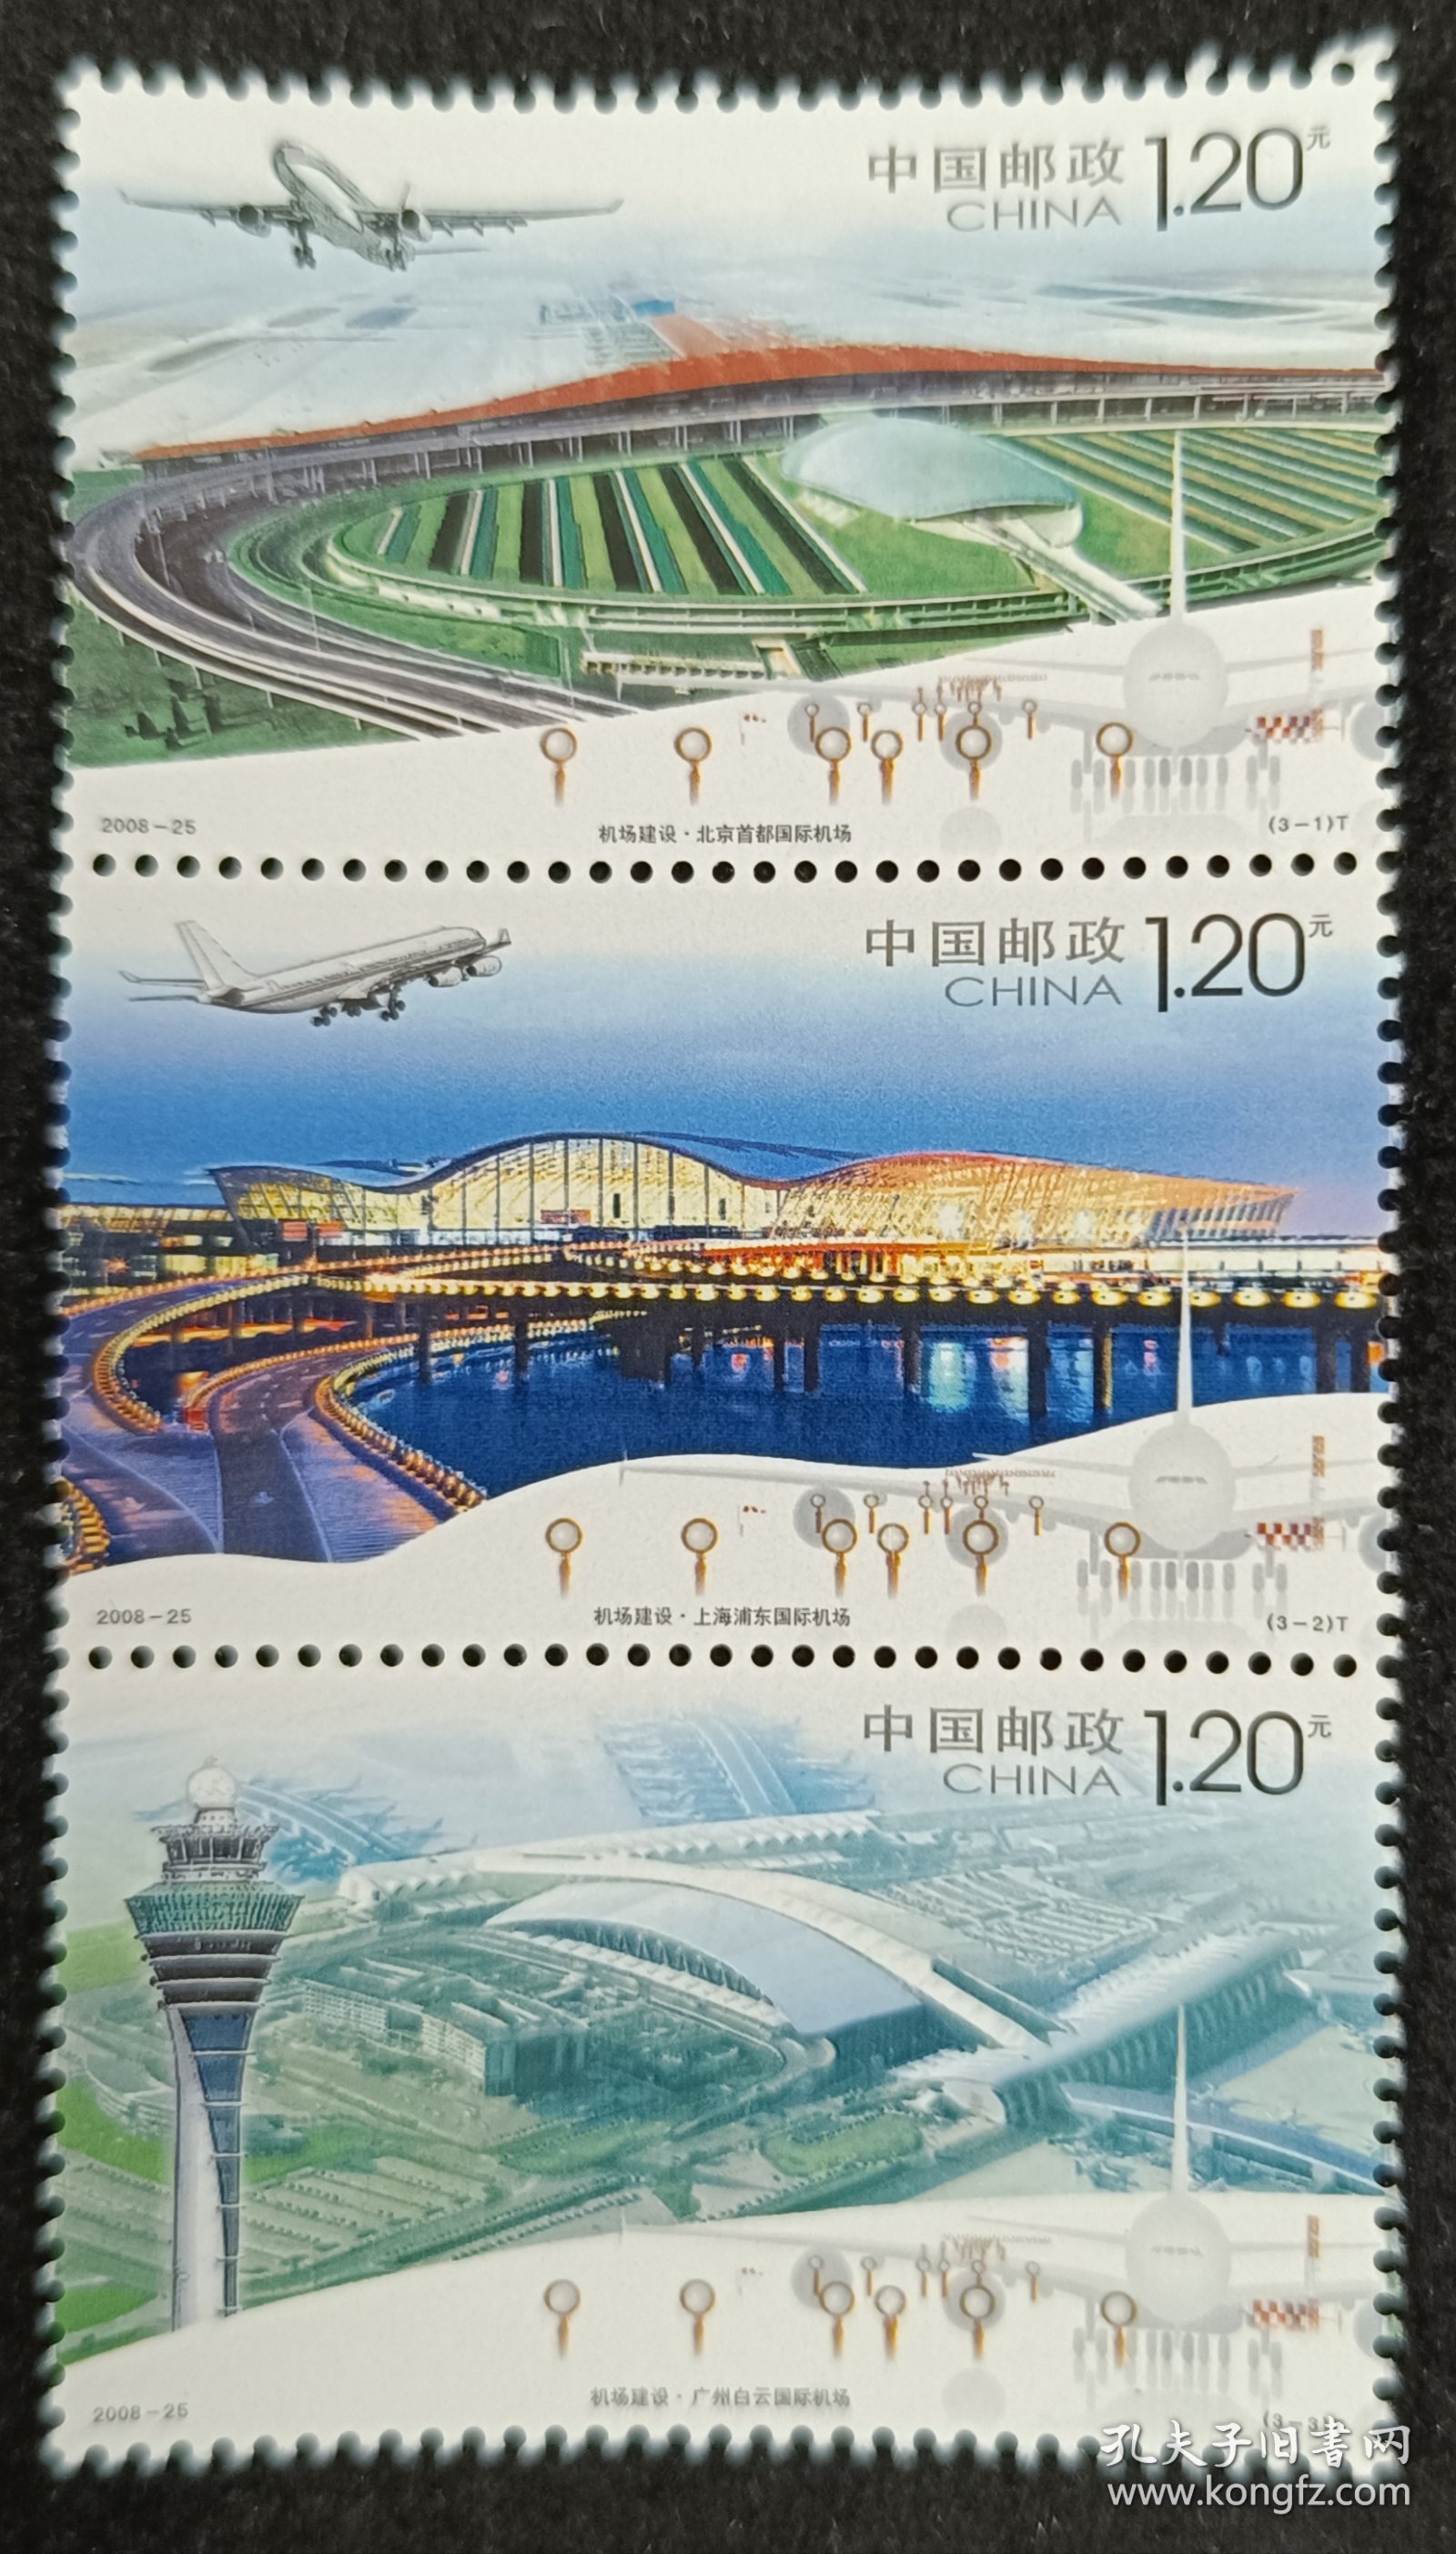 2008-25机场建设邮票